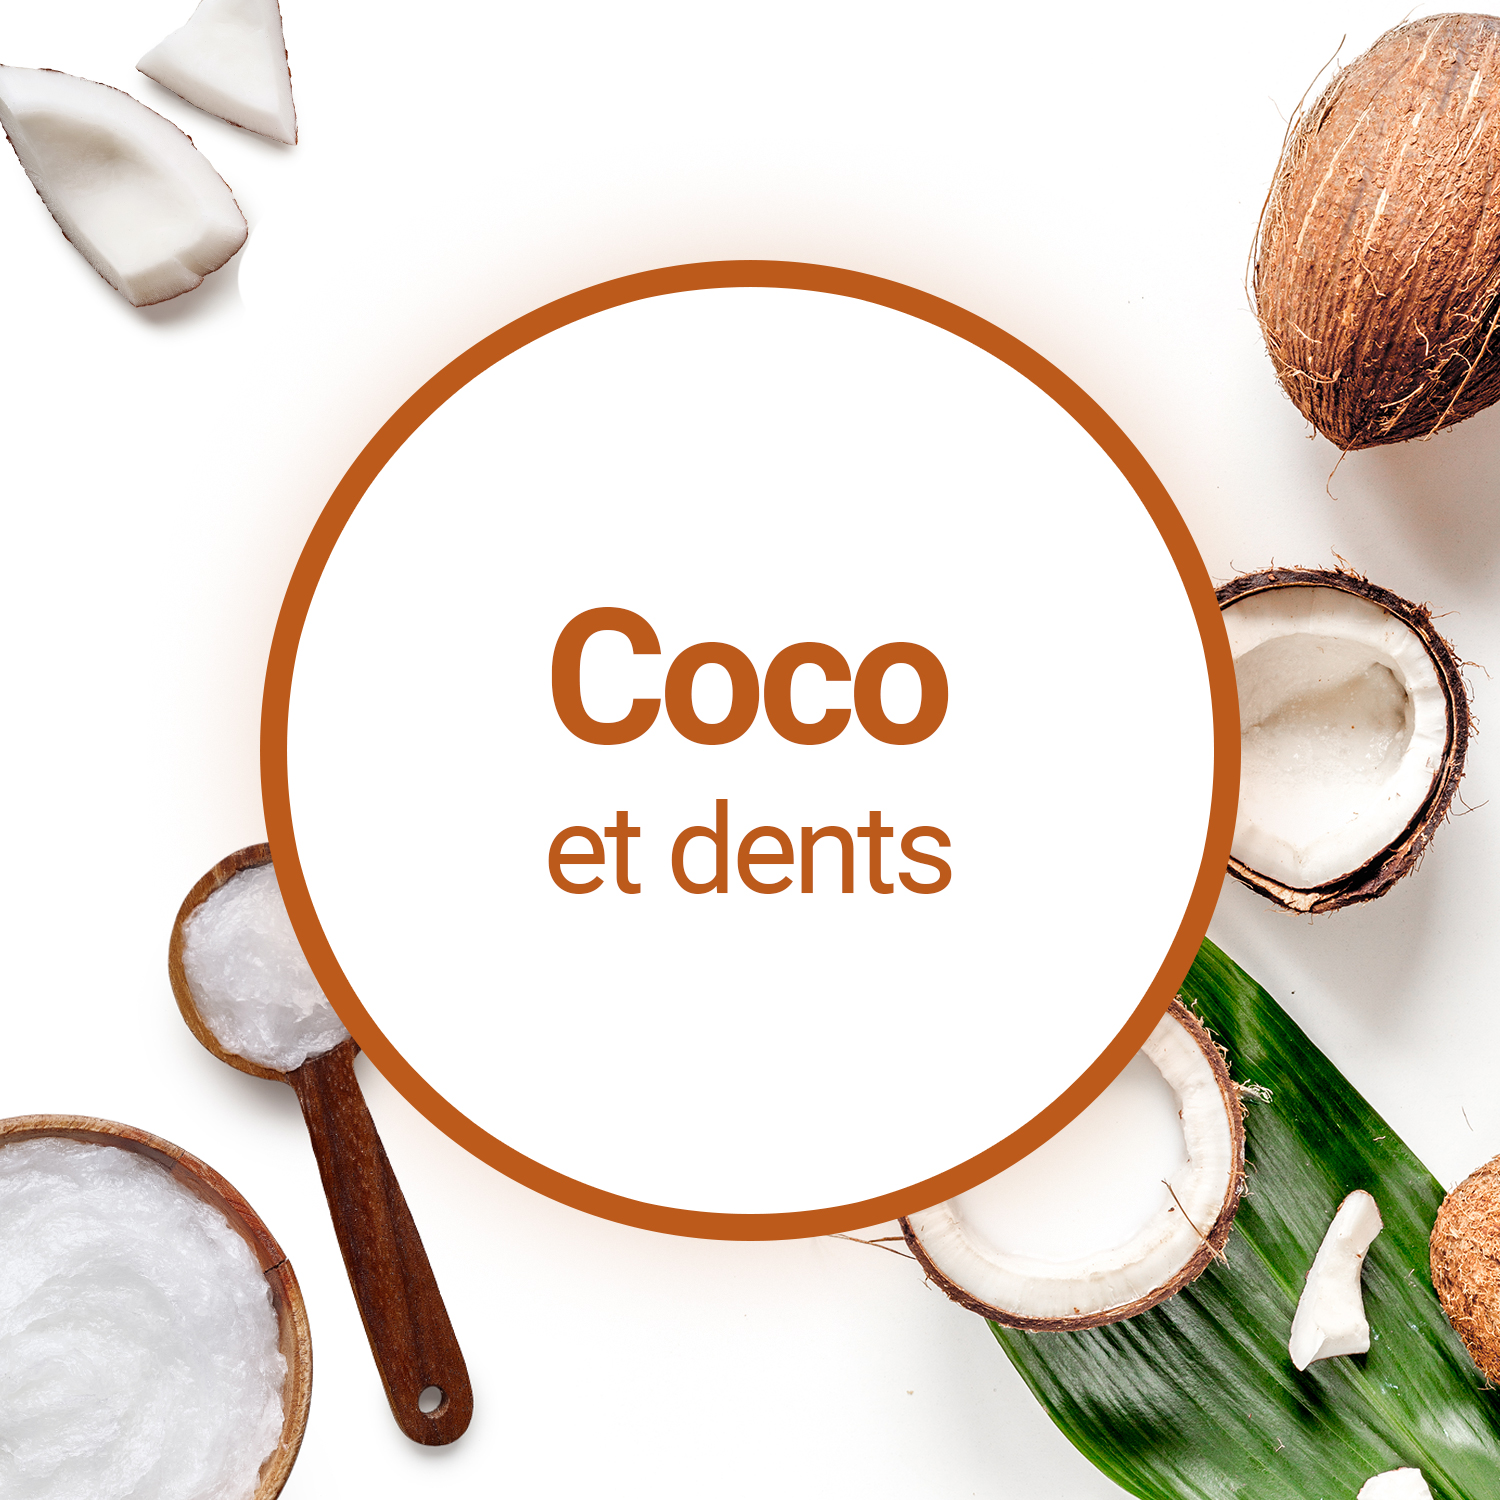 L'huile de coco aide-t-elle vraiment à avoir des dents plus